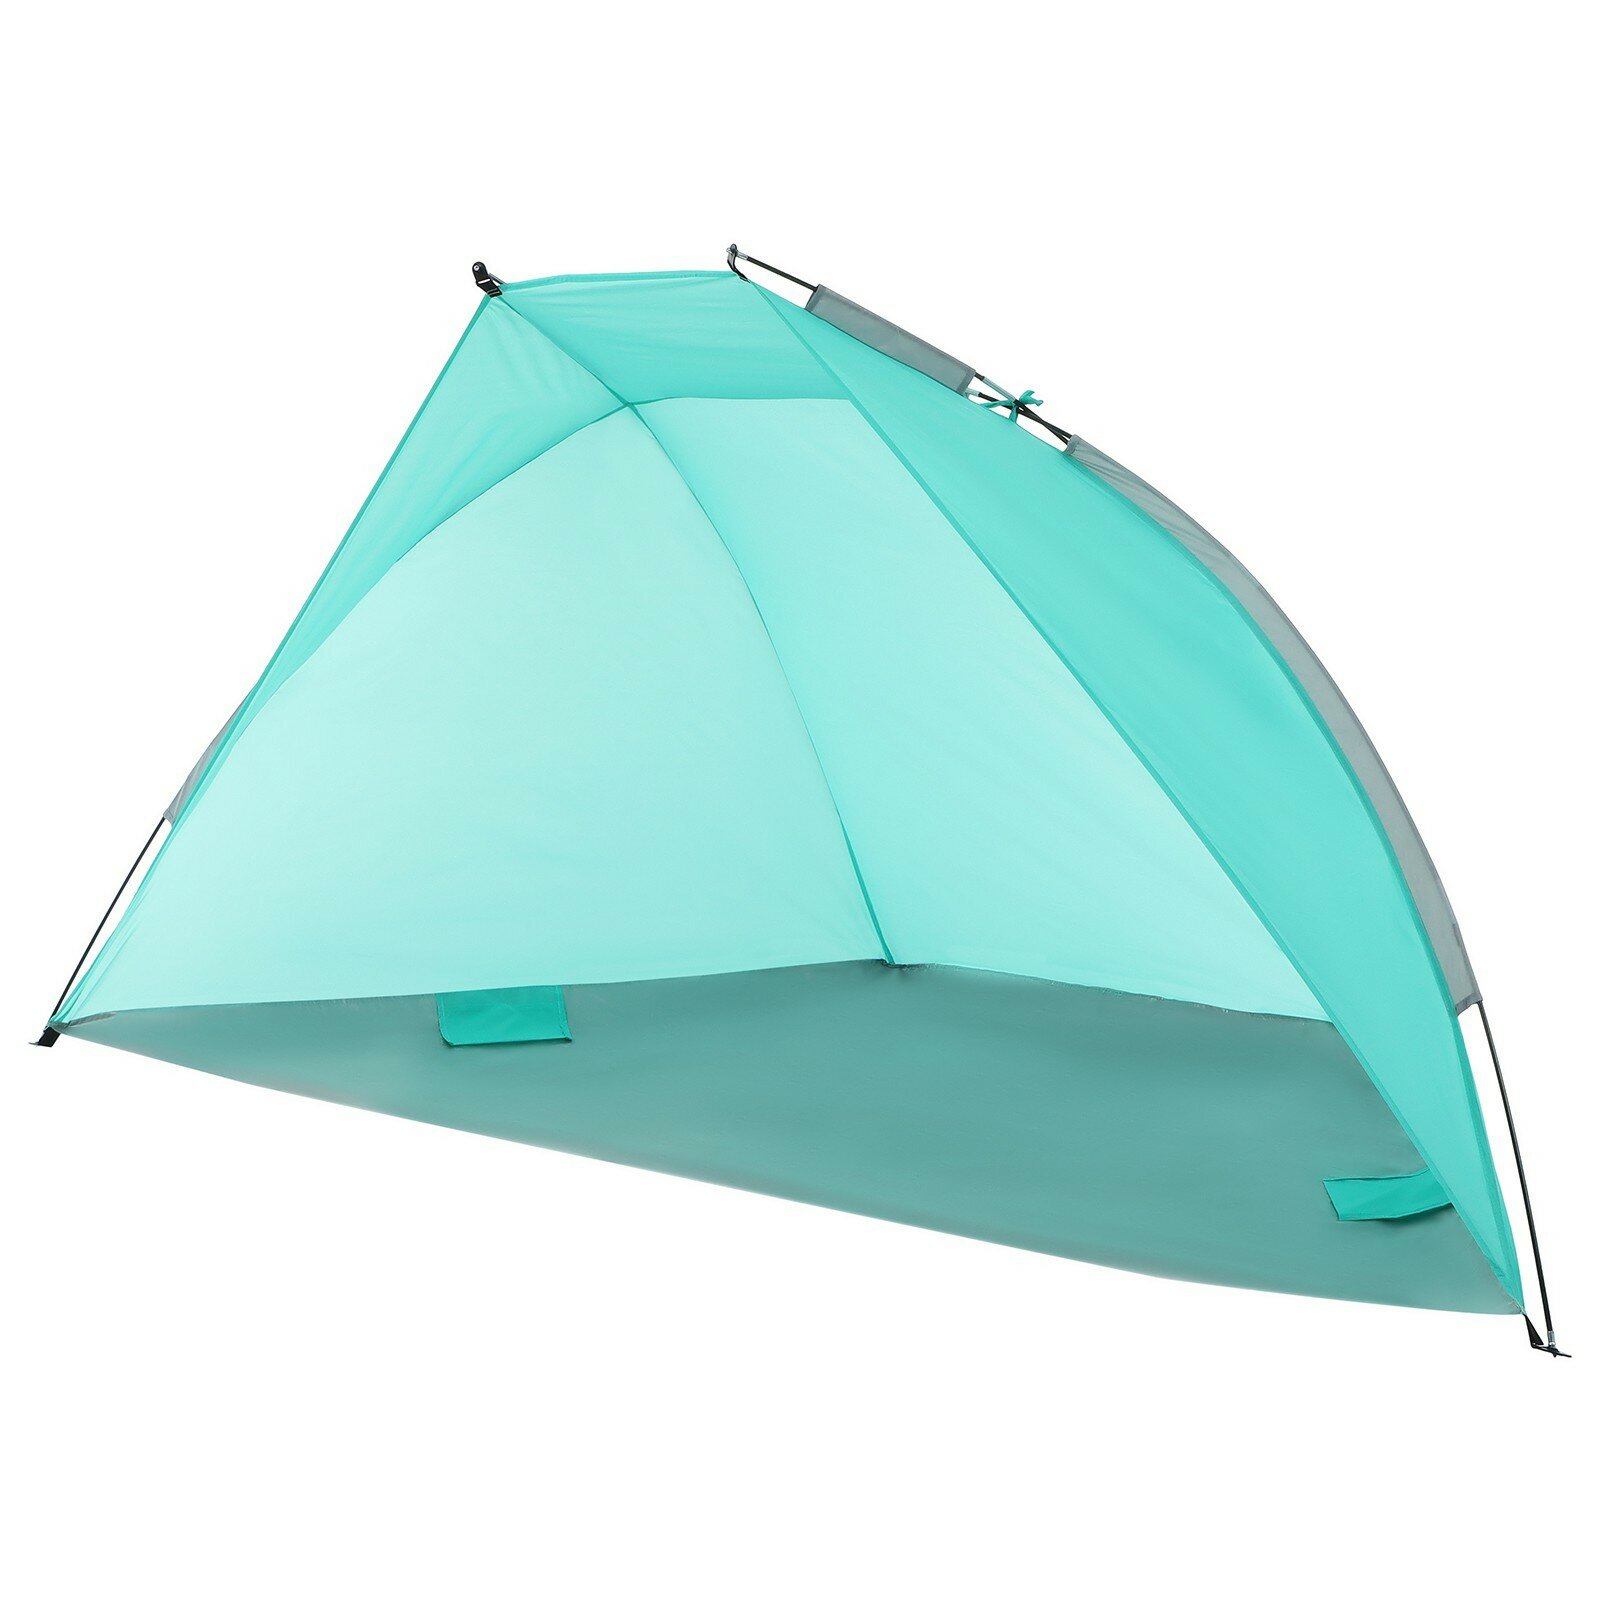 Пляжная палатка Maclay одноместная, быстросборная, с внутренним каркасом и УФ-защитой, 240х120х120 см